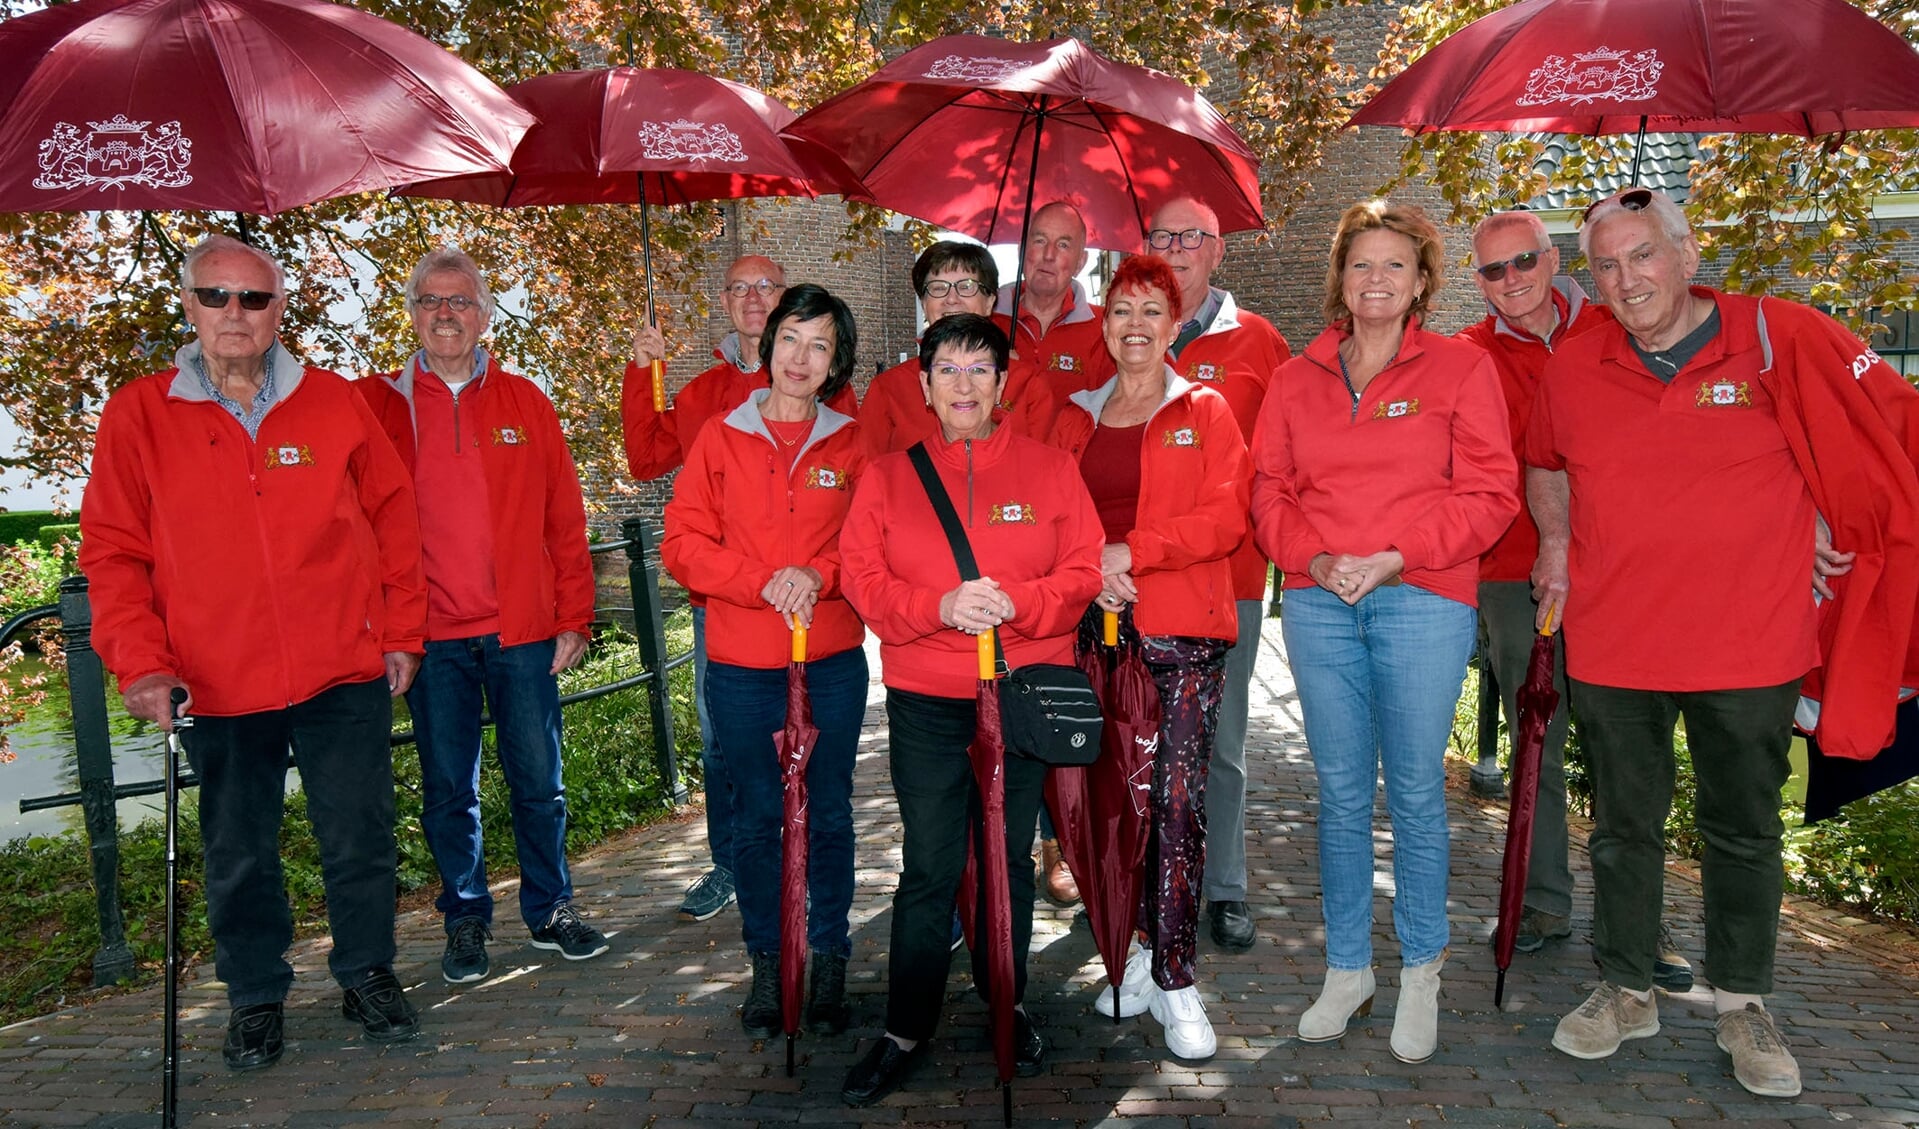 De stadsgidsen van Montfoort in hun opvallend rode outfit met bijbehorende paraplu